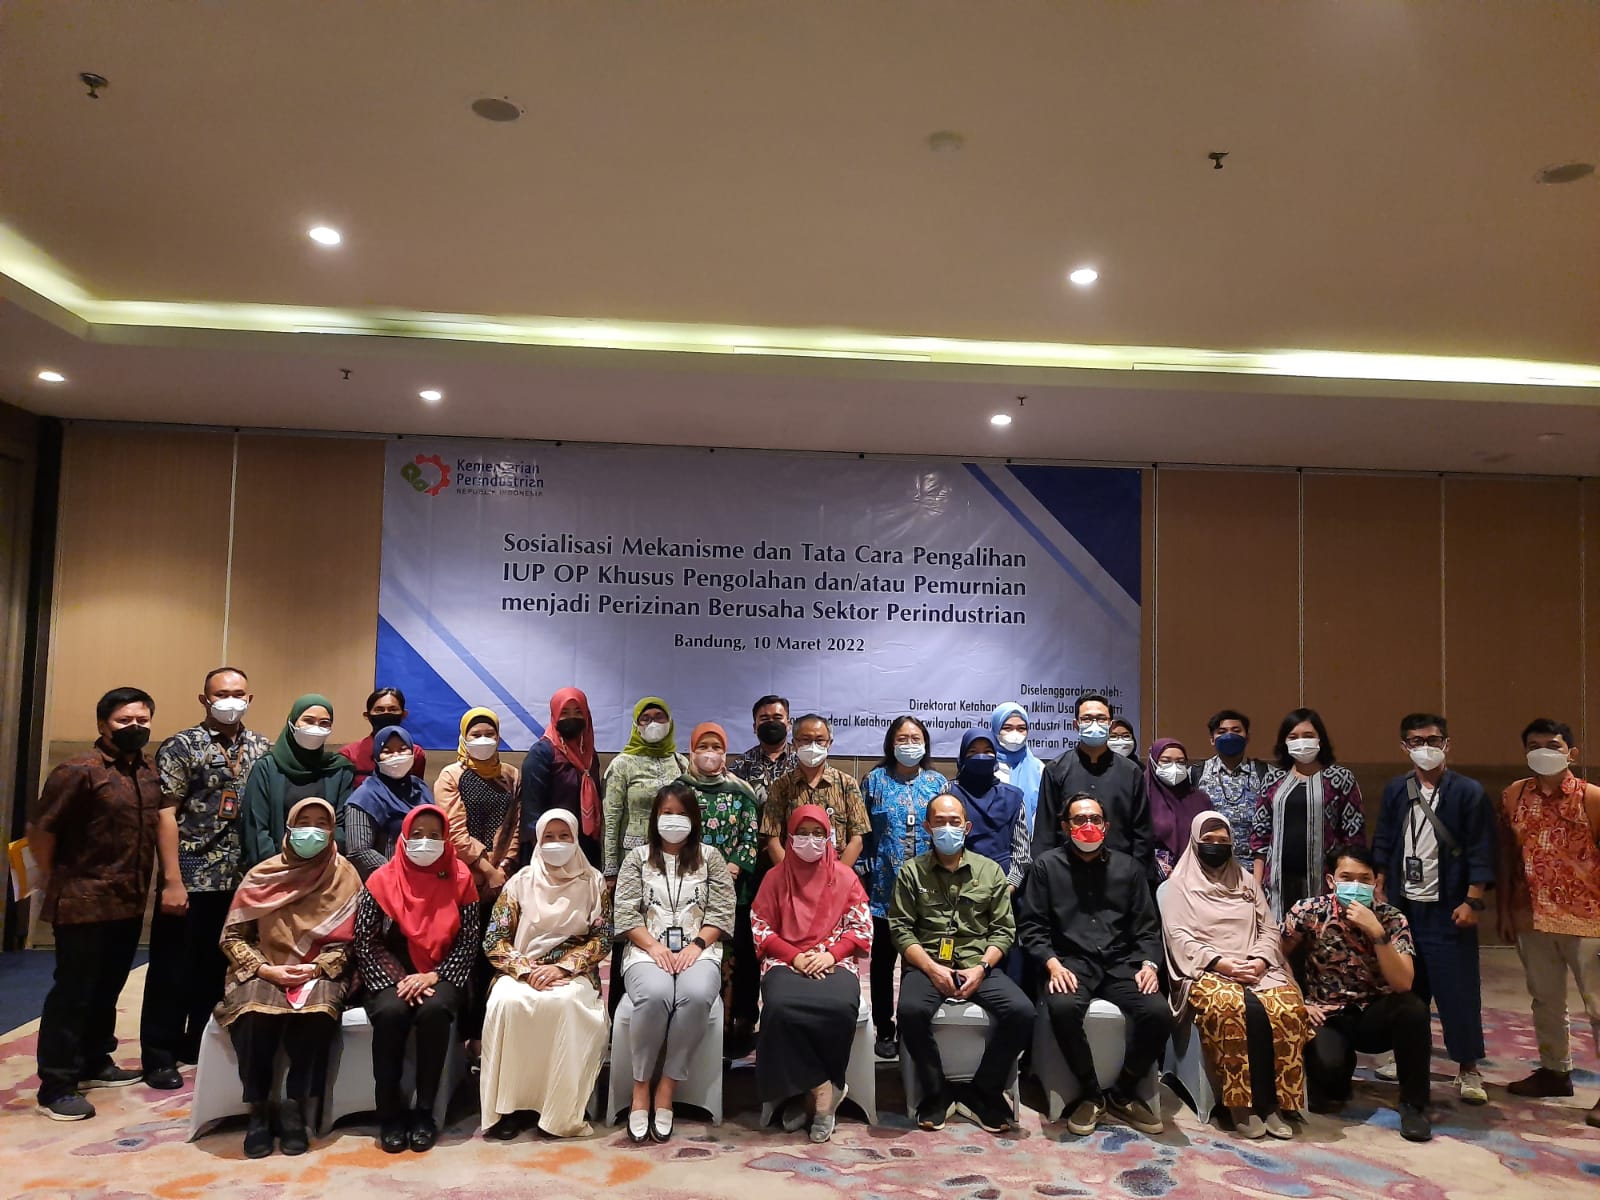 Sosialisasi Pengalihan IUP OP Khusus Pengolahan dan atau Pemurnian menjadi Perizinan Berusaha Sektor Perindustrian di Provinsi Jawa Barat 